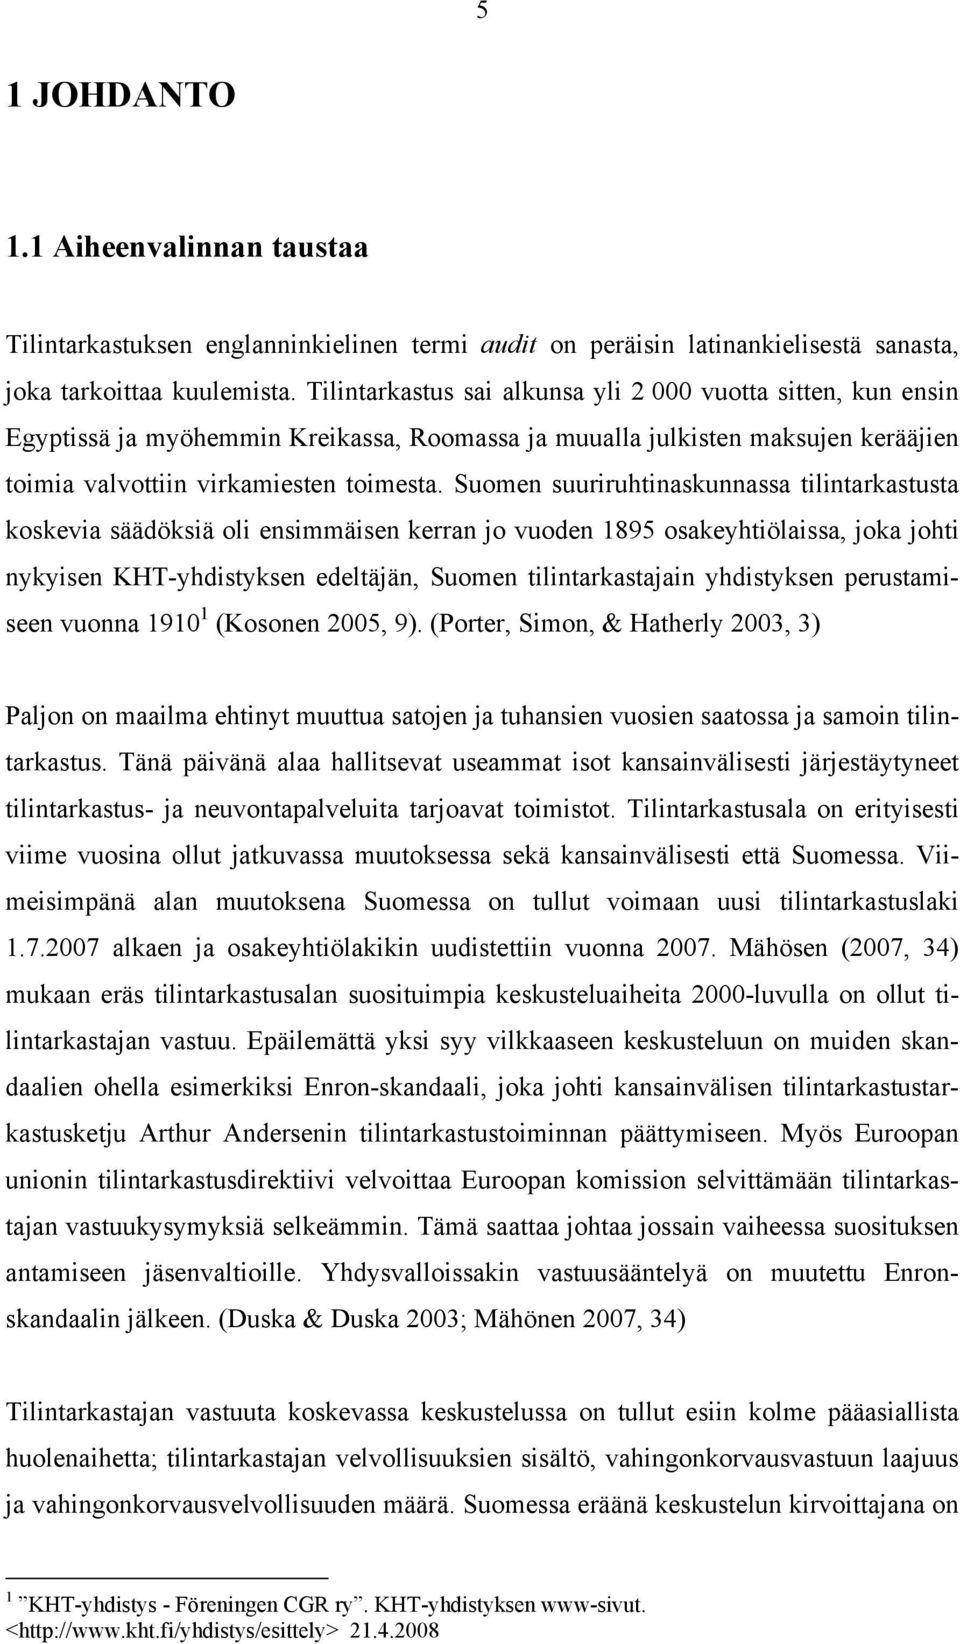 Suomen suuriruhtinaskunnassa tilintarkastusta koskevia säädöksiä oli ensimmäisen kerran jo vuoden 1895 osakeyhtiölaissa, joka johti nykyisen KHT-yhdistyksen edeltäjän, Suomen tilintarkastajain